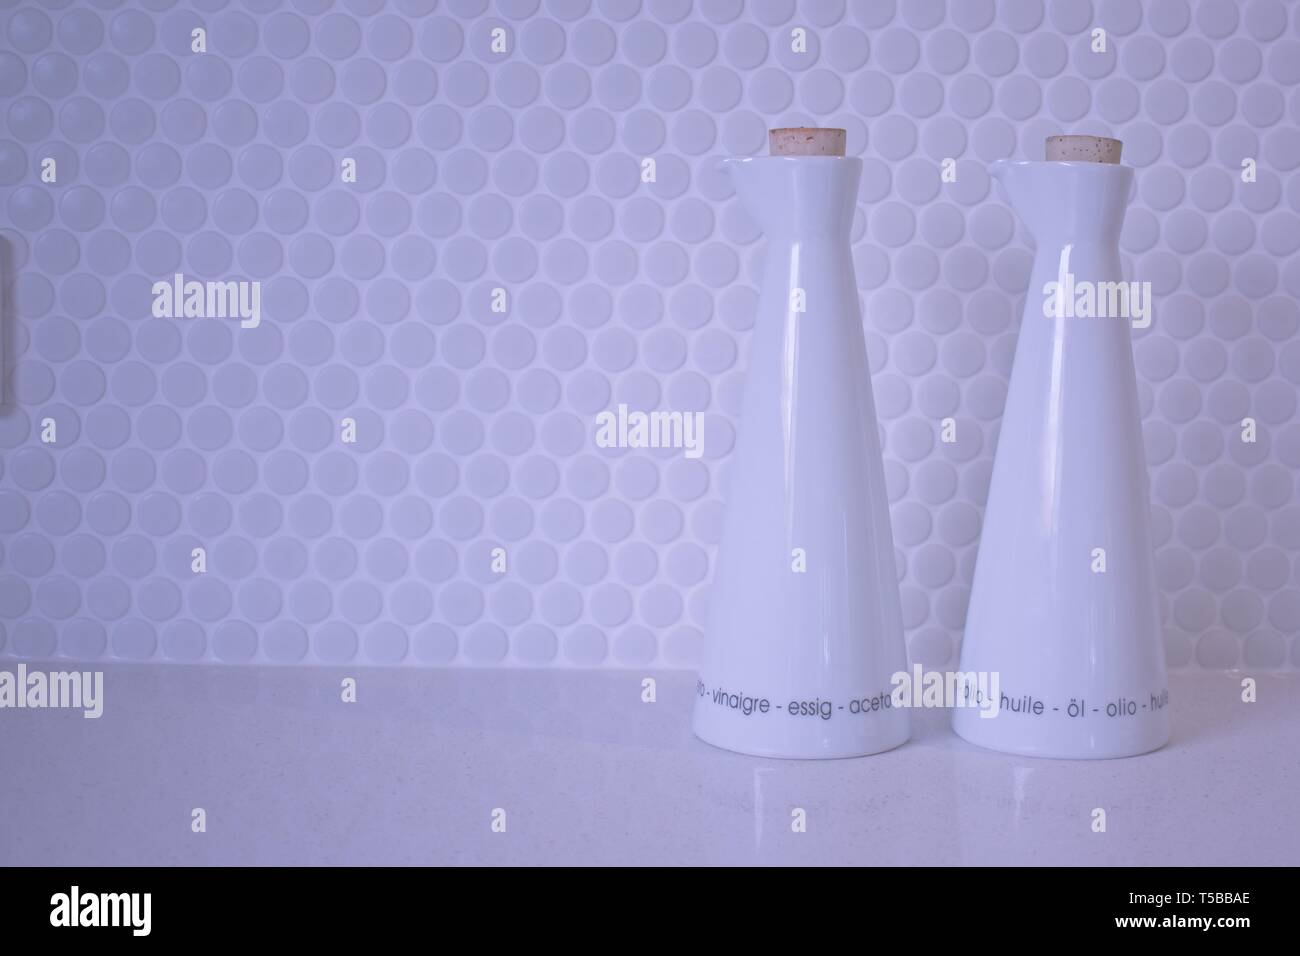 Olio e aceto bottiglie su una bianca parete piastrellata Foto Stock